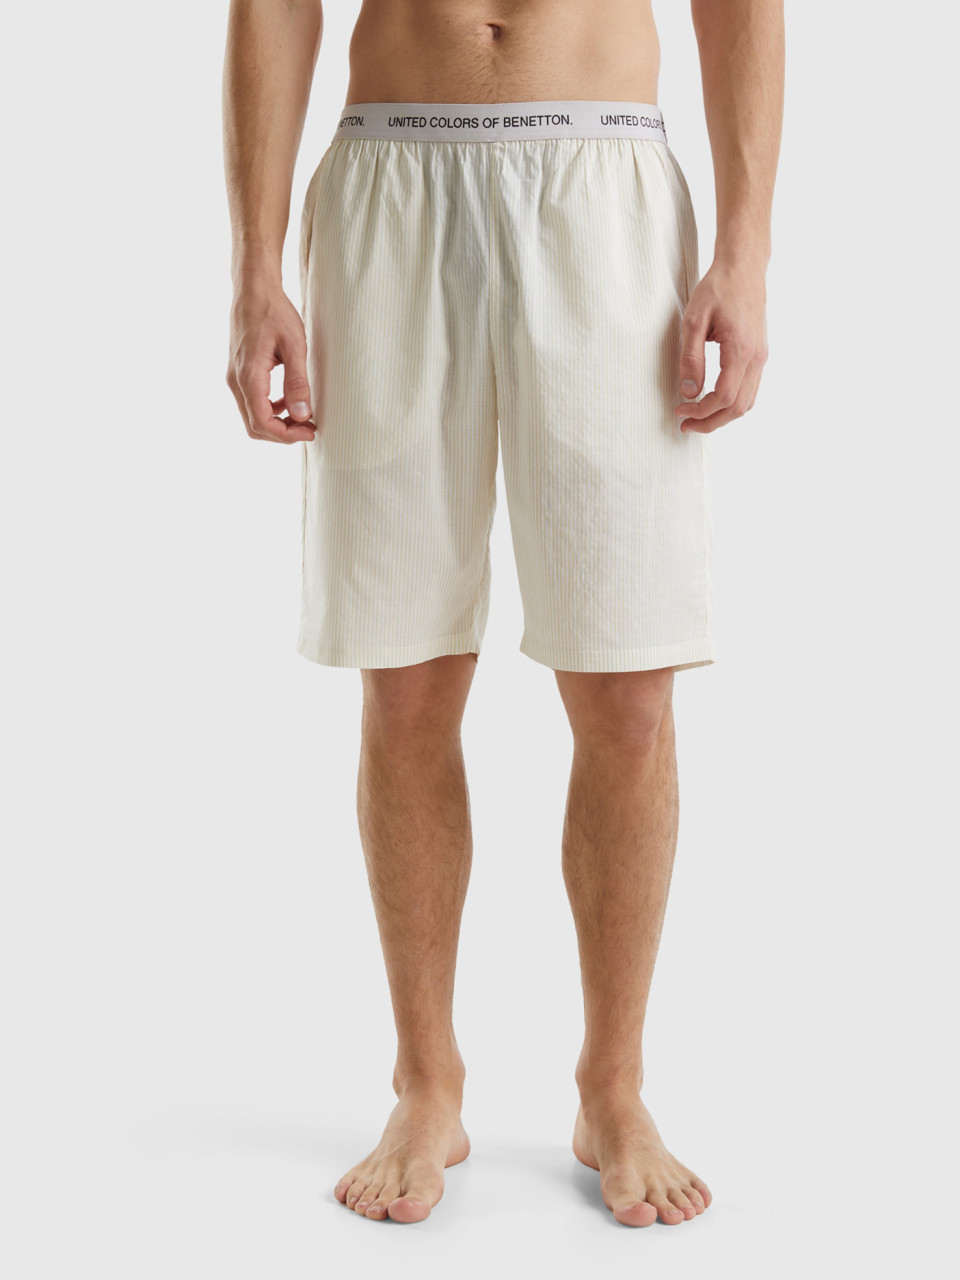 Benetton, Striped 100% Cotton Shorts, Creamy White, Men